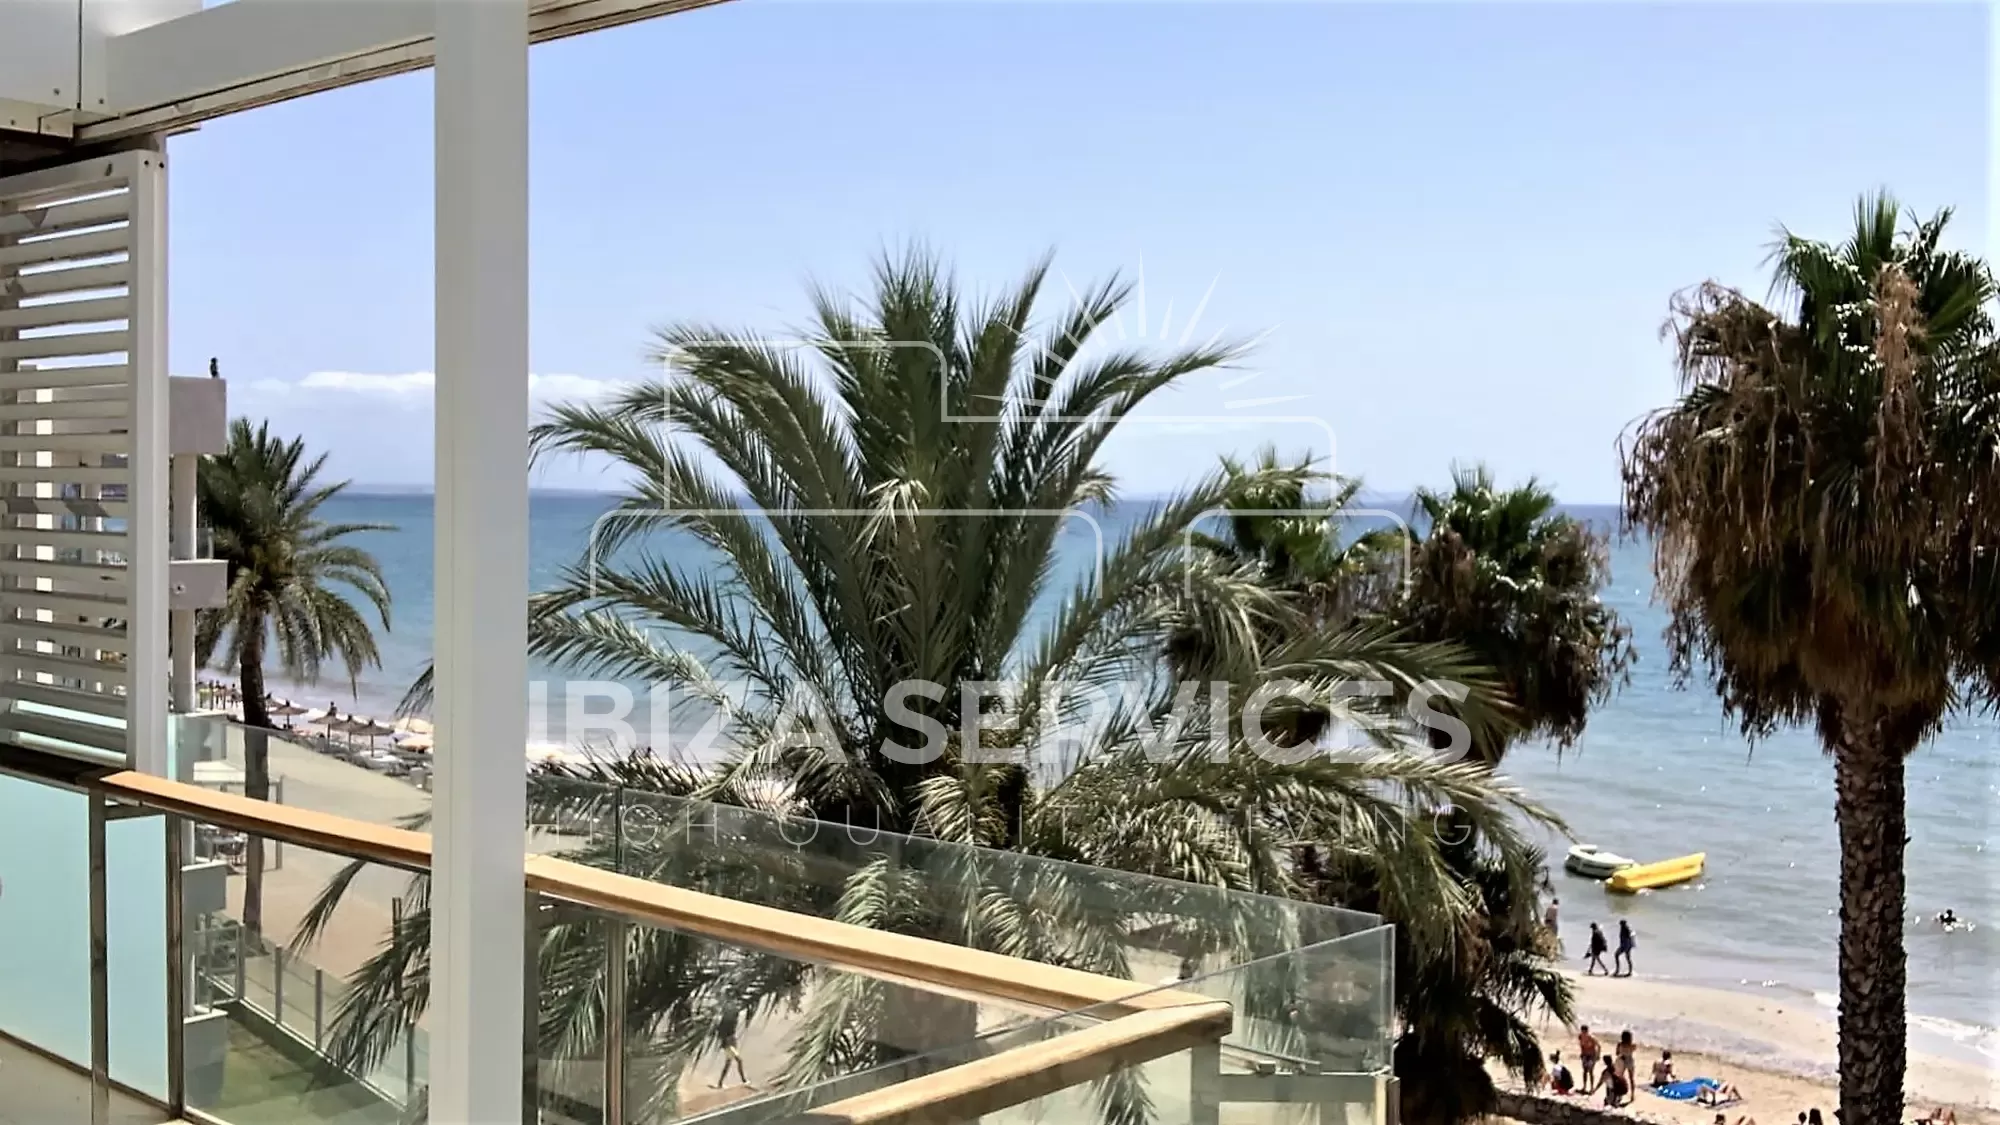 Entdecken Sie Ihr Traumstrandhaus in Playa d’en Bossa!